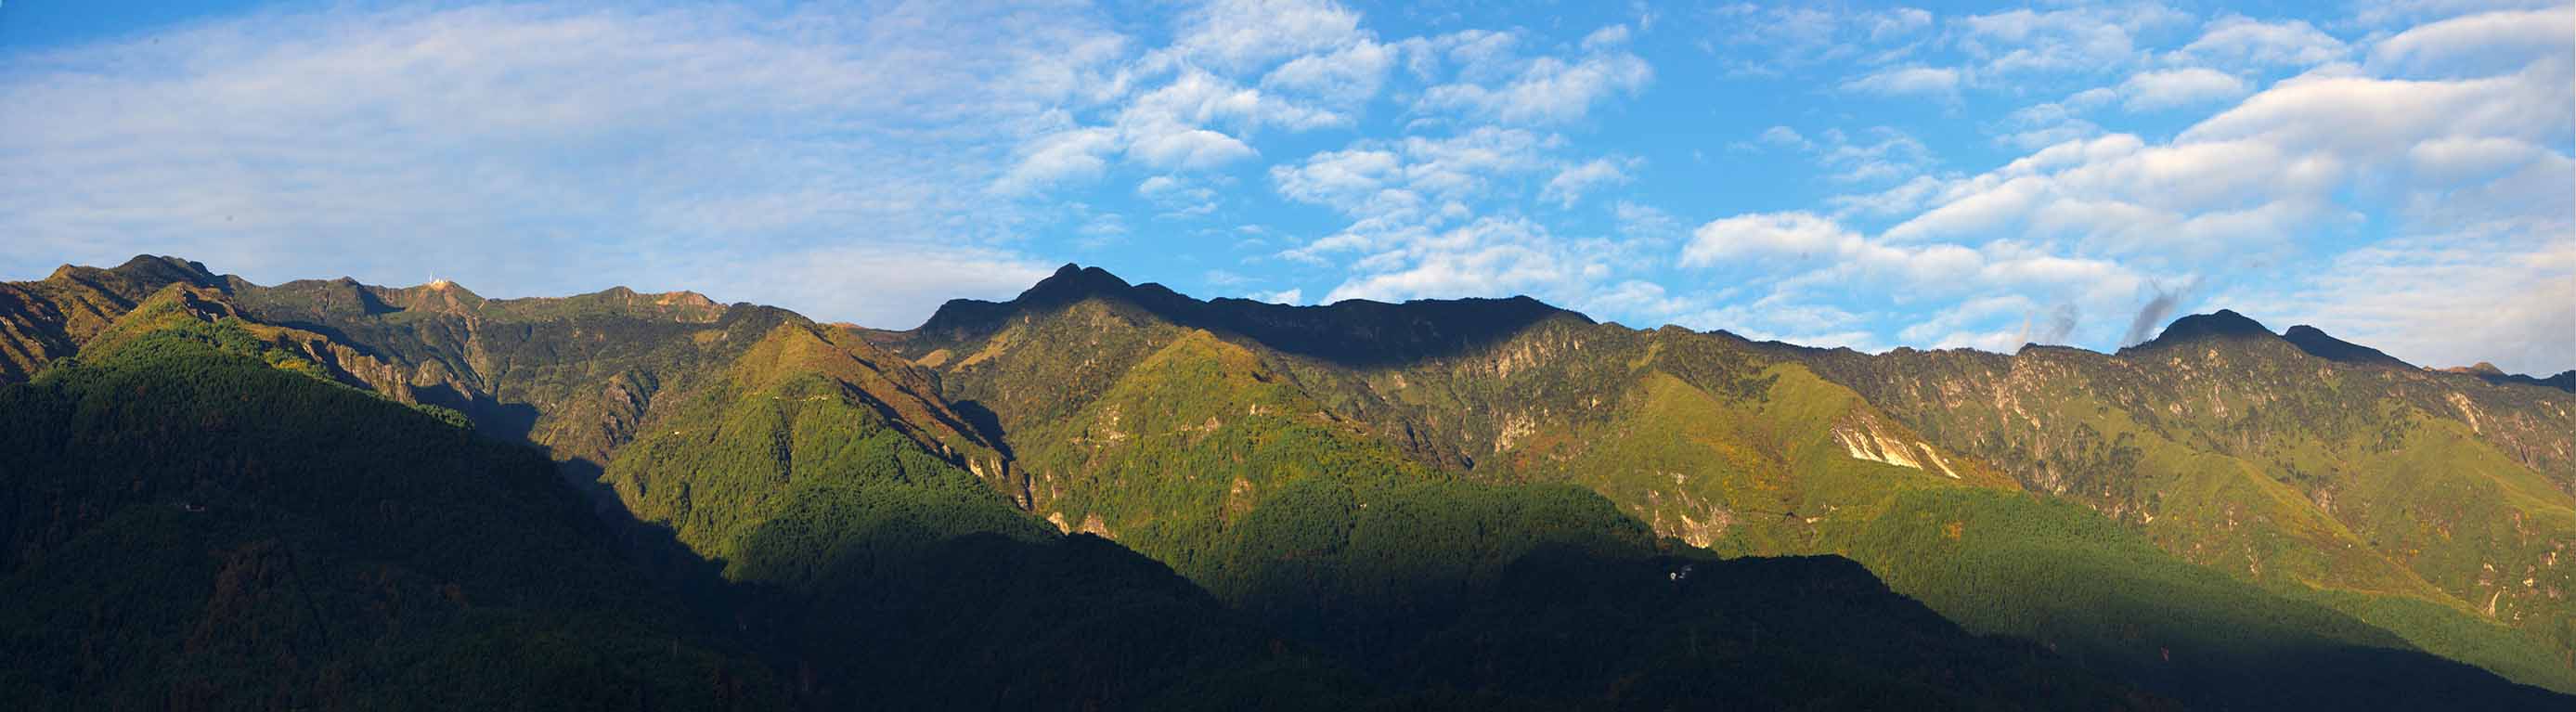 苍山洱海国家级自然保护区导览